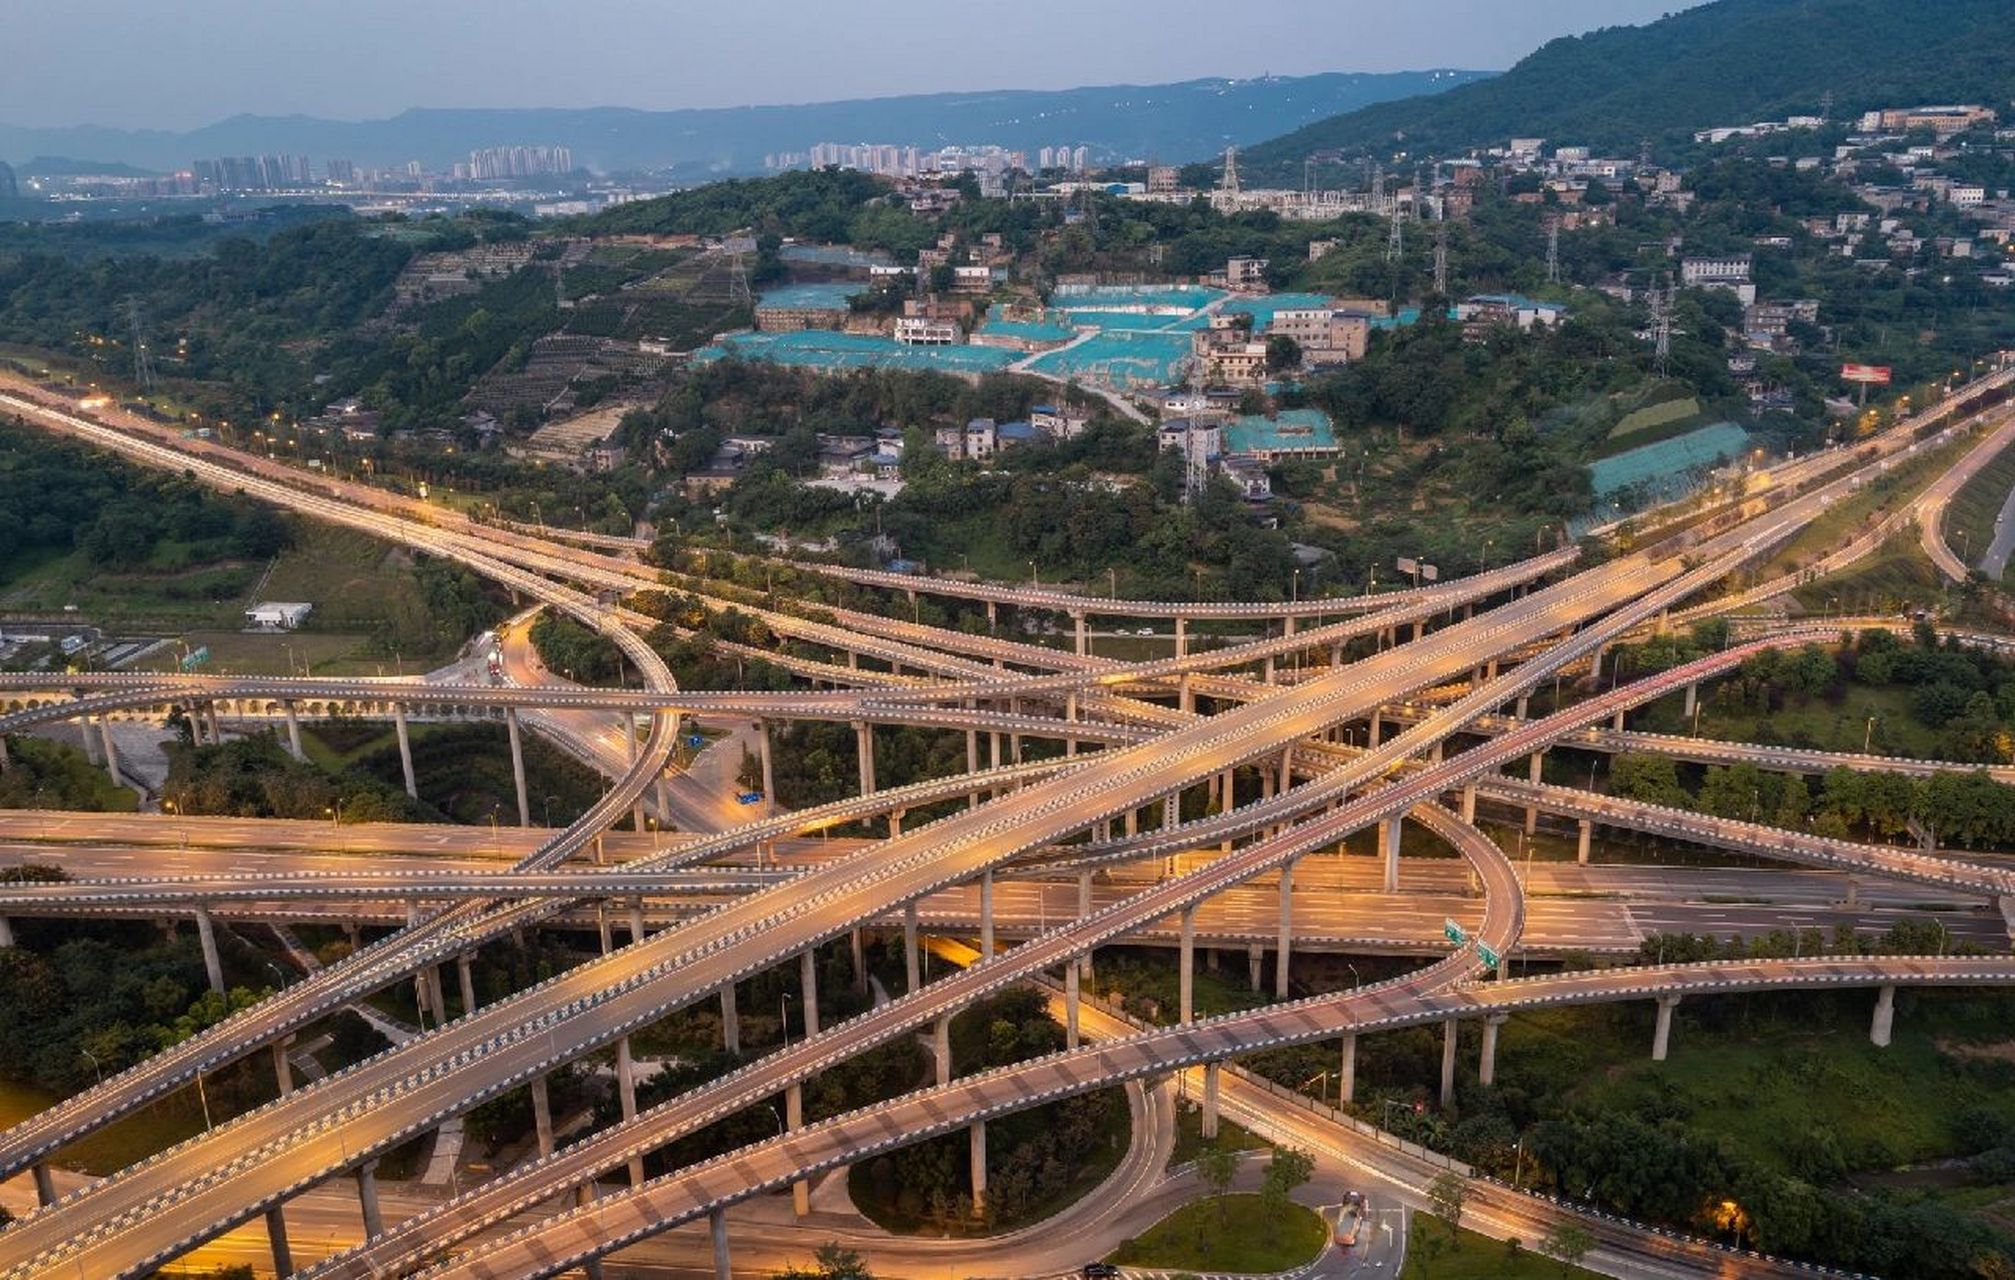 来重庆打卡立交桥吧,这个8d魔幻城市的立交绝对有0元体验过山车的赶脚